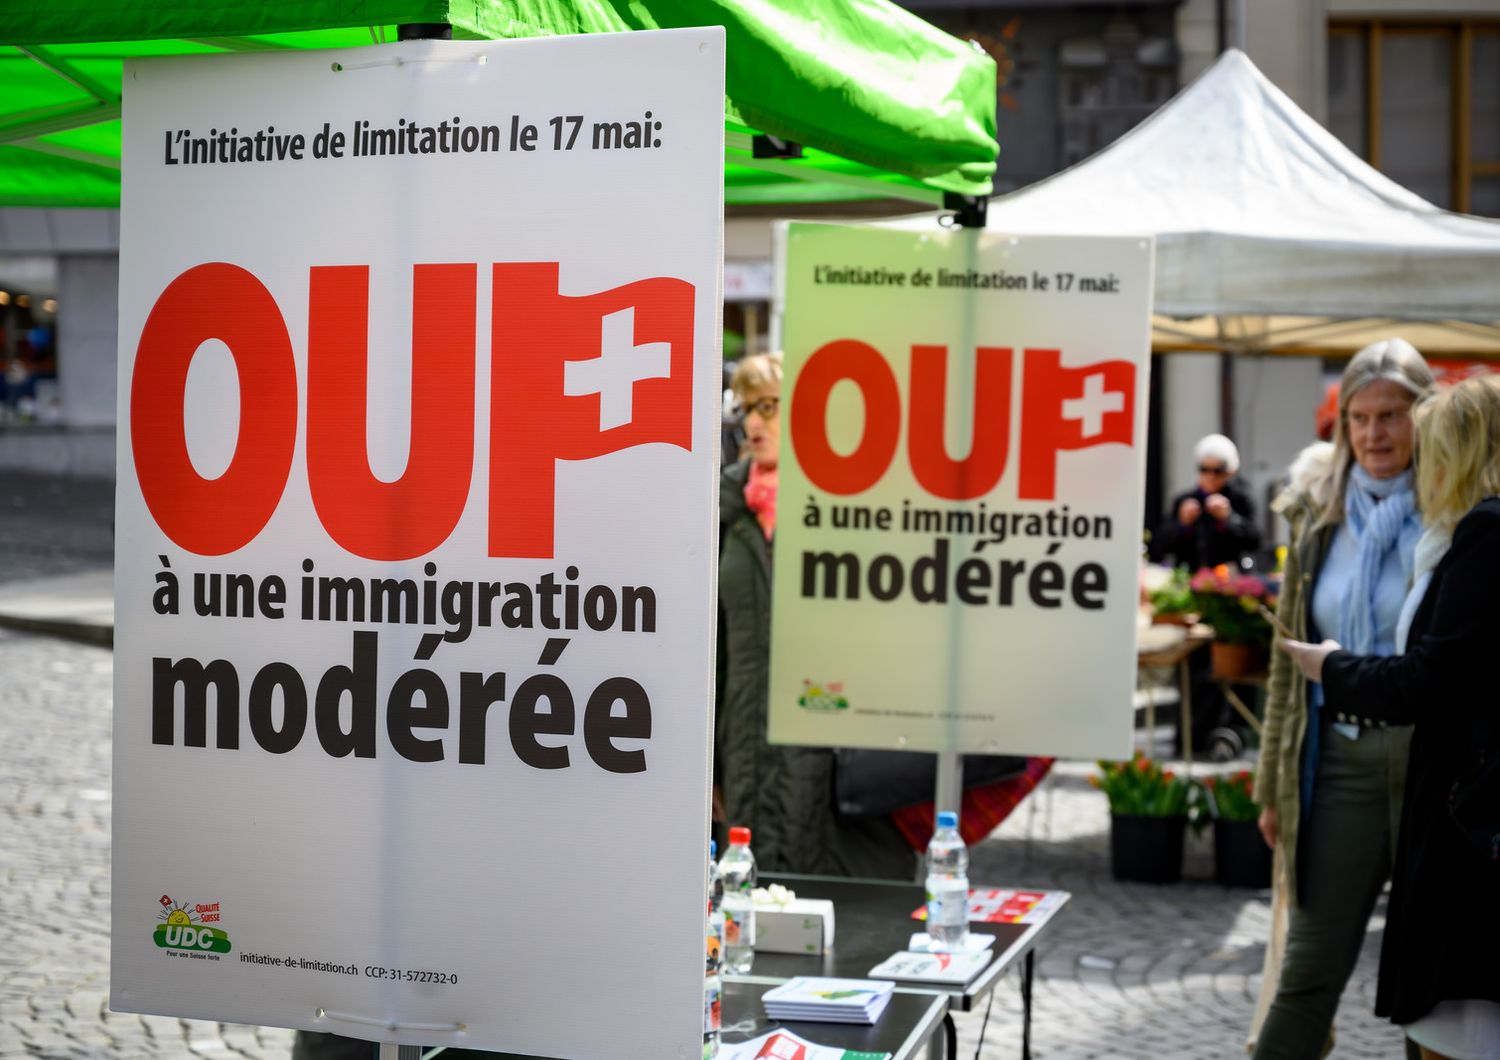 La campagna elettorale per il referendum sull'immigrazione in Svizzera